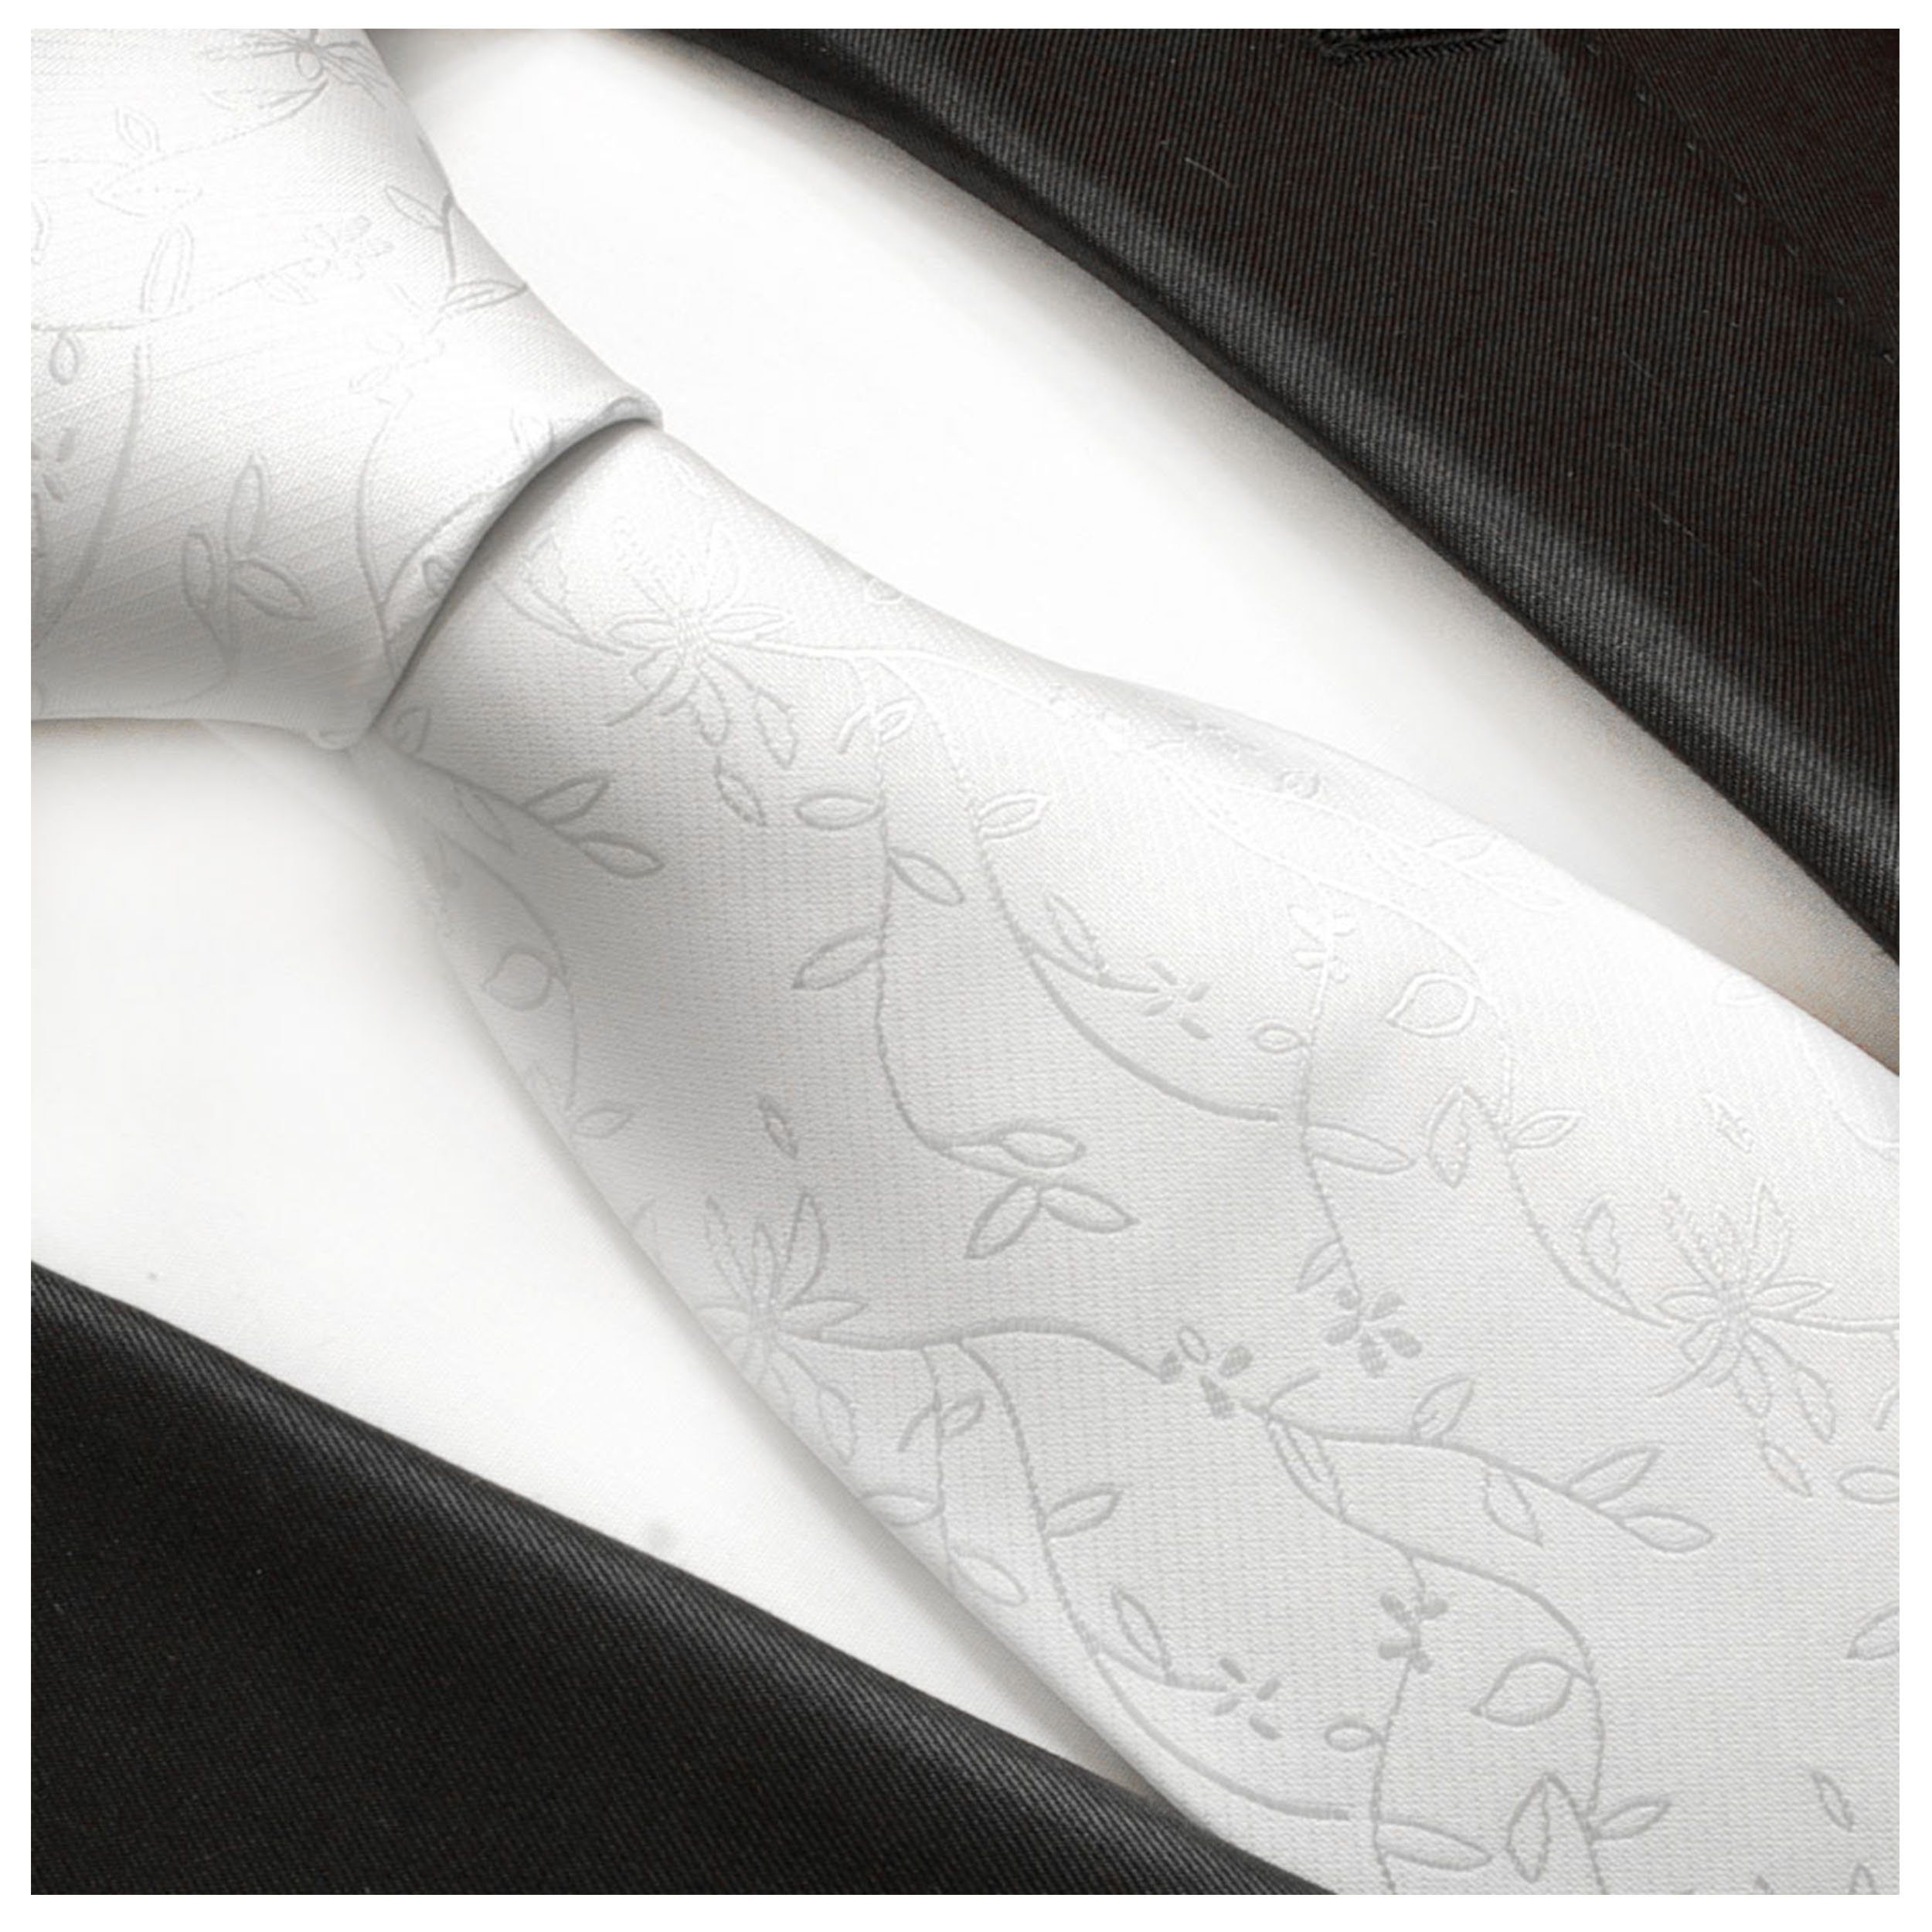 Paul Malone - Hochzeitskrawatte (6cm), Krawatte Bräutigam silber Mikrofaser floral Schmal V20 - Herren weiß